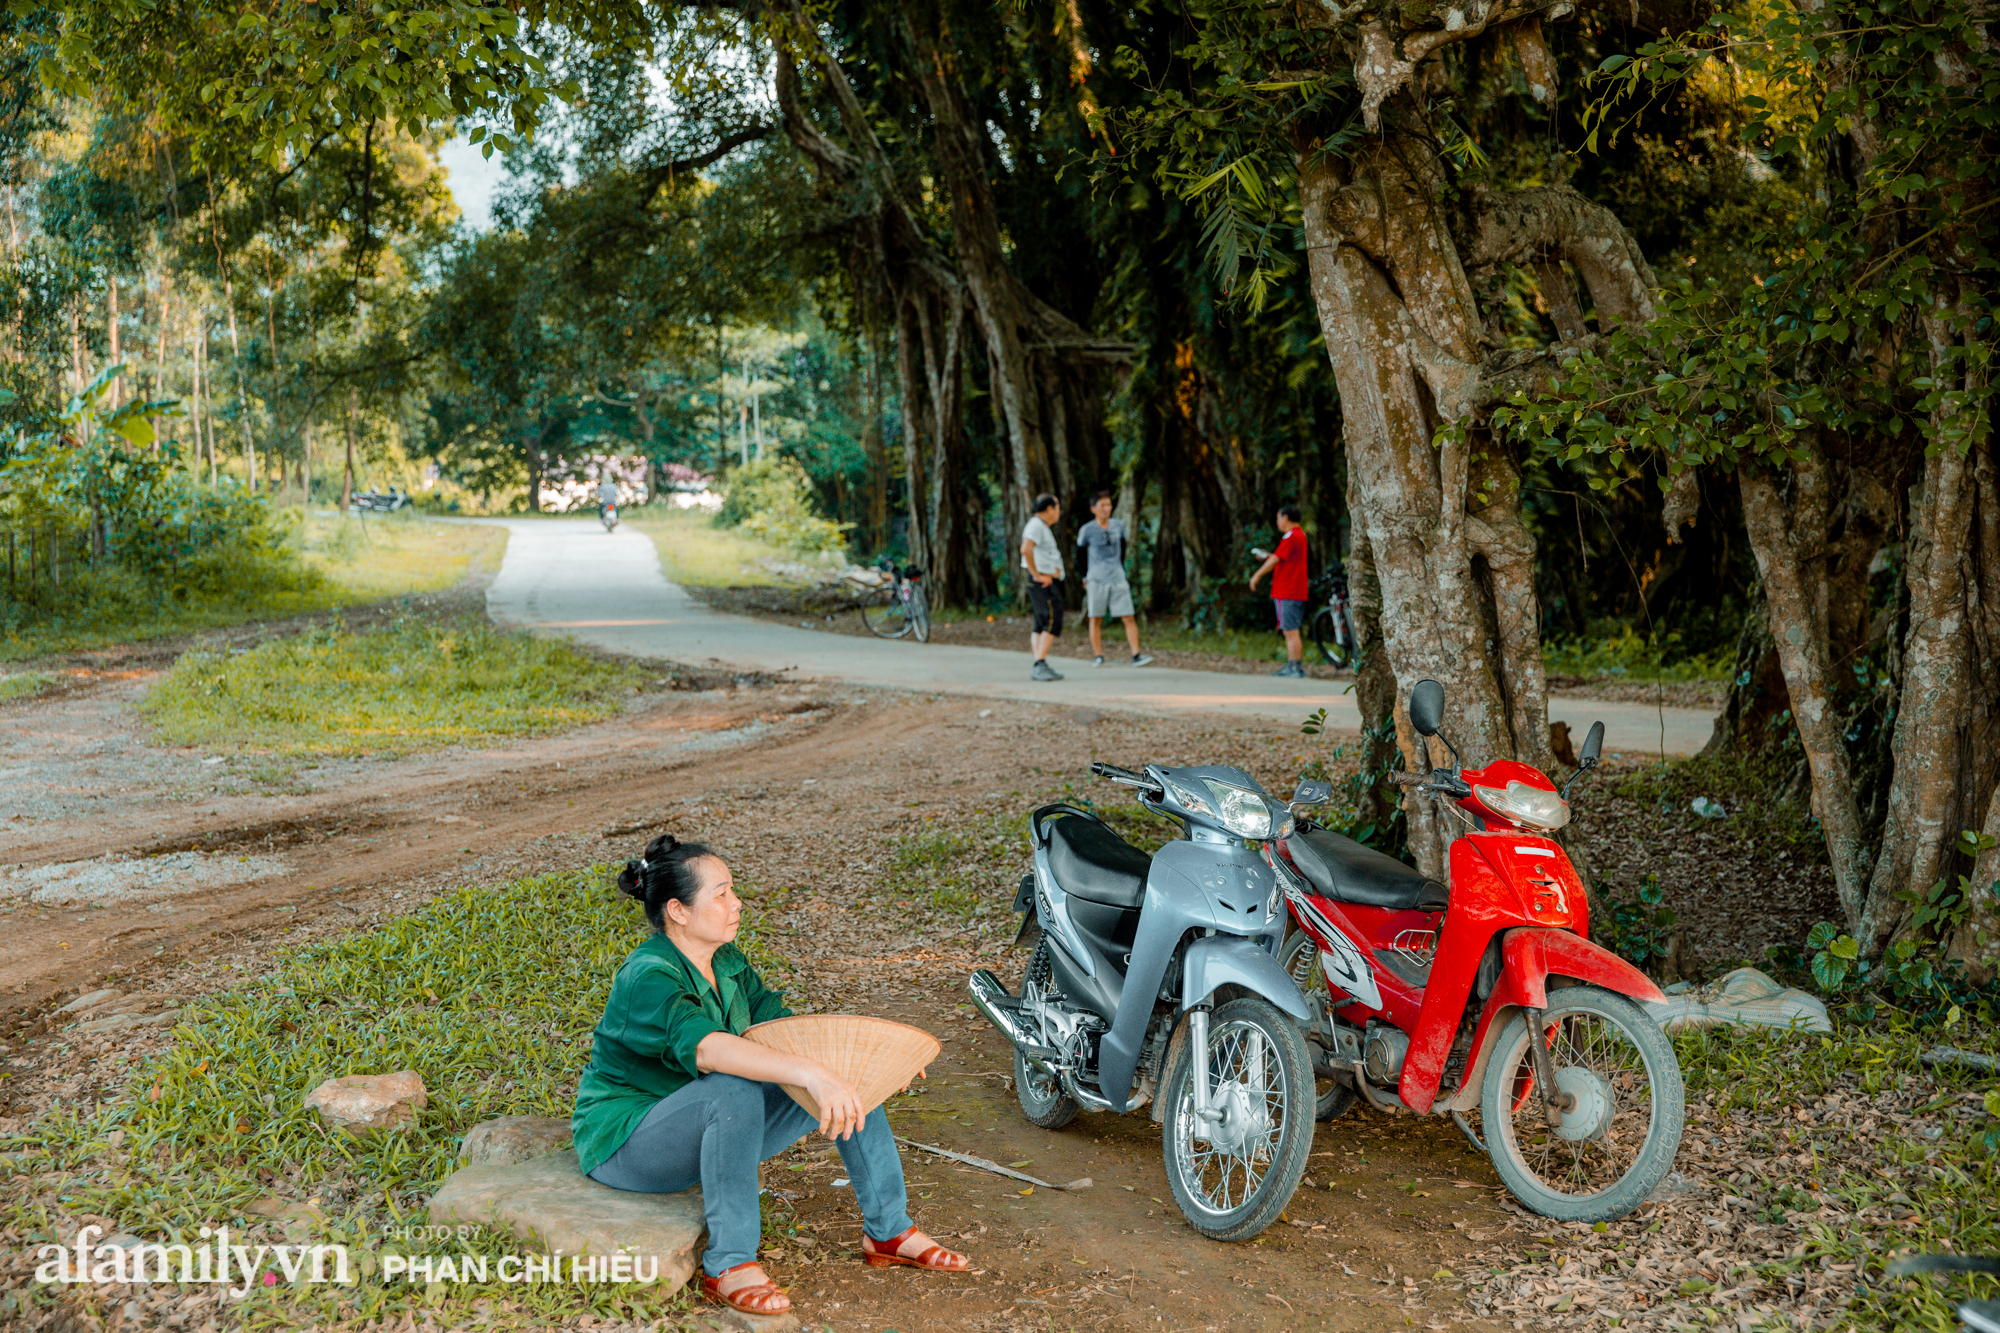 Ngôi làng độc nhất Việt Nam sở hữu chiếc cổng từ cây đại thu 800 năm tuổi, từng là bối cảnh cực ấn tượng trong những bộ phim về làng quê Việt Nam - Ảnh 2.